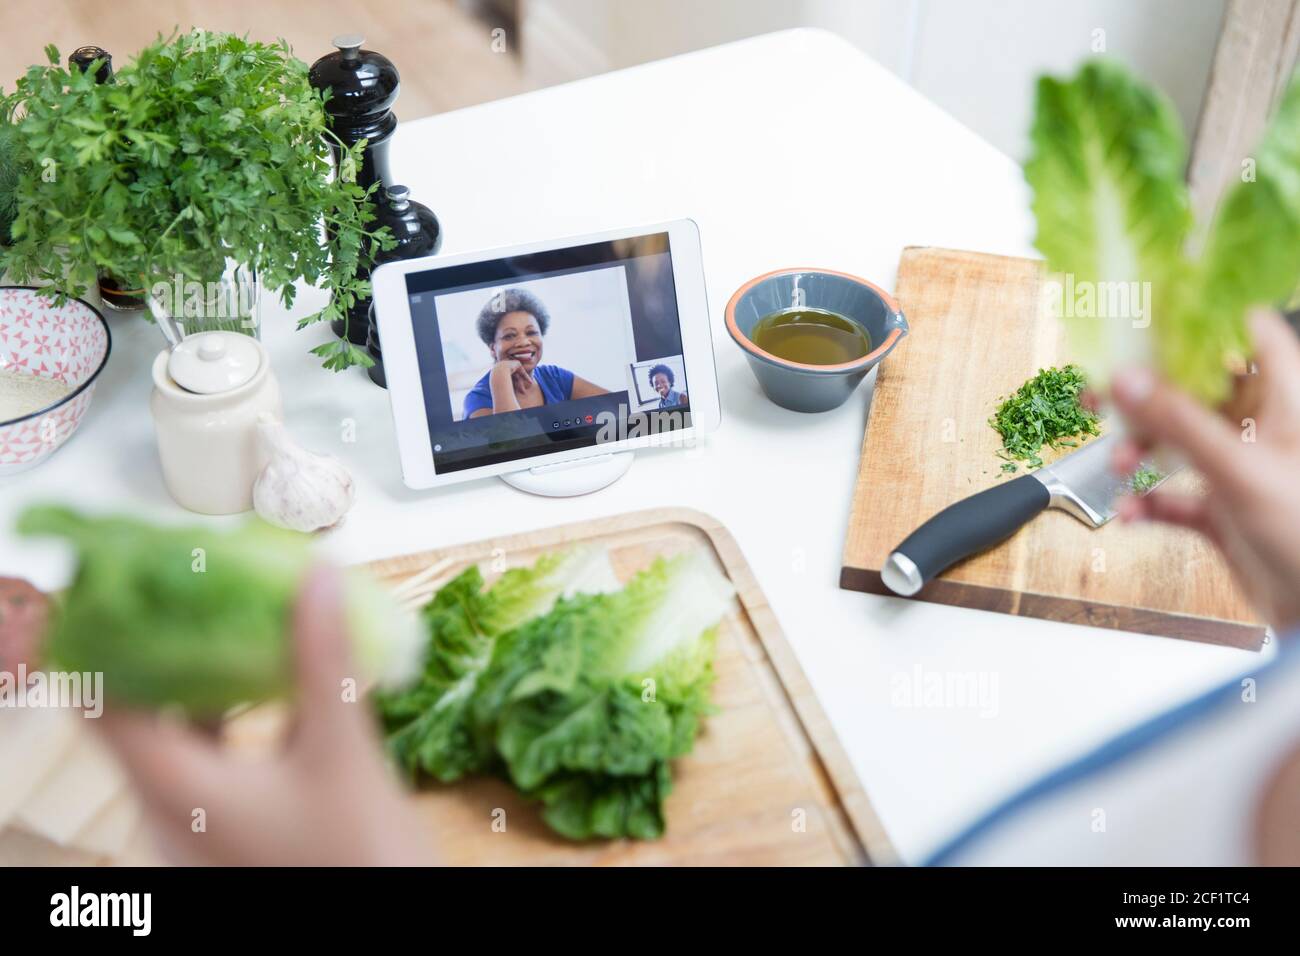 Donna con cucina lattuga e video chat con gli amici in cucina Foto Stock